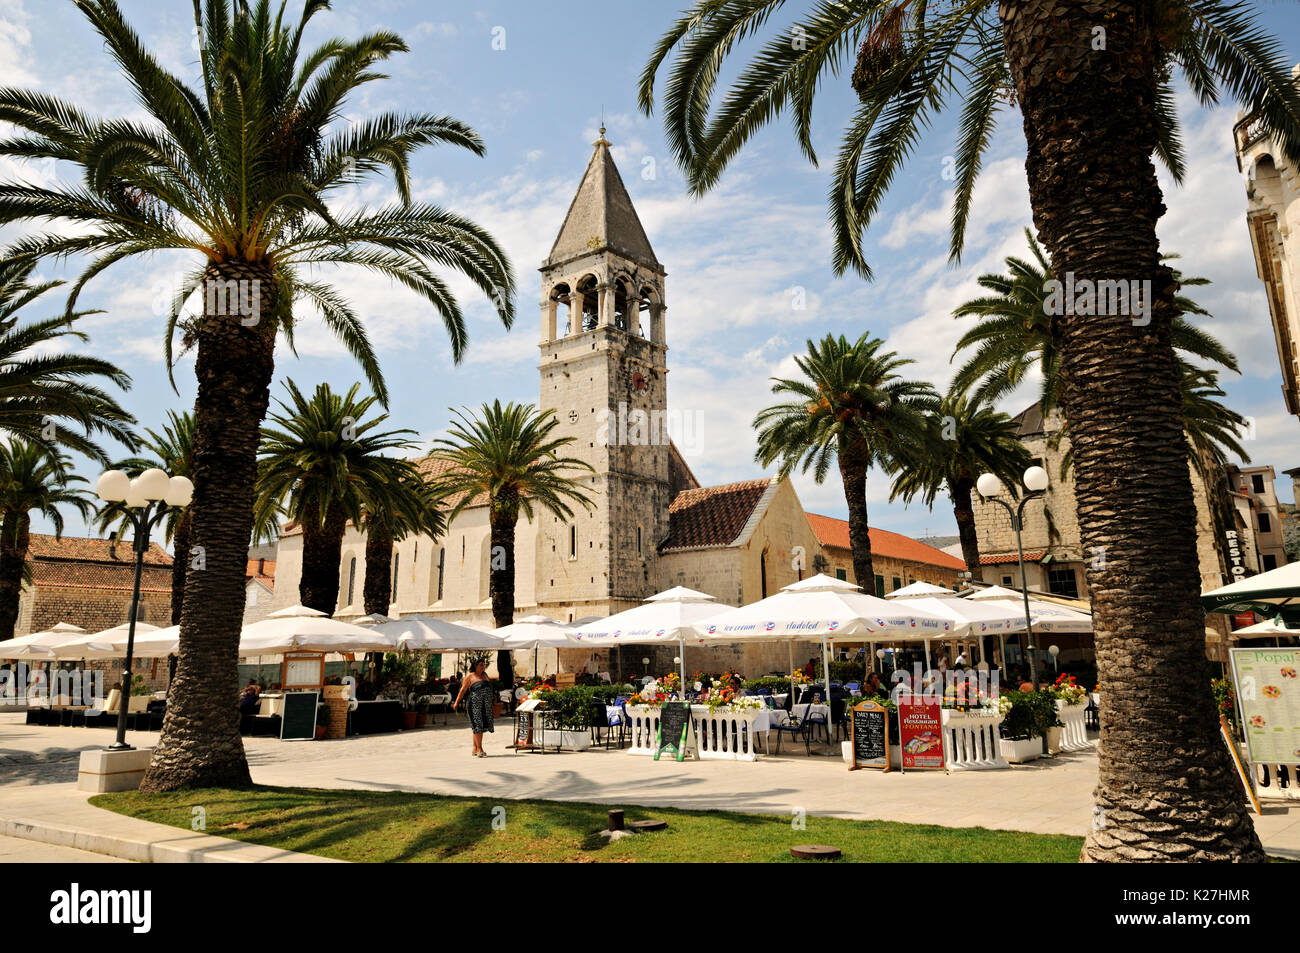 Palmiers et st. Dominic église dans la vieille ville de Trogir, Croatie Banque D'Images